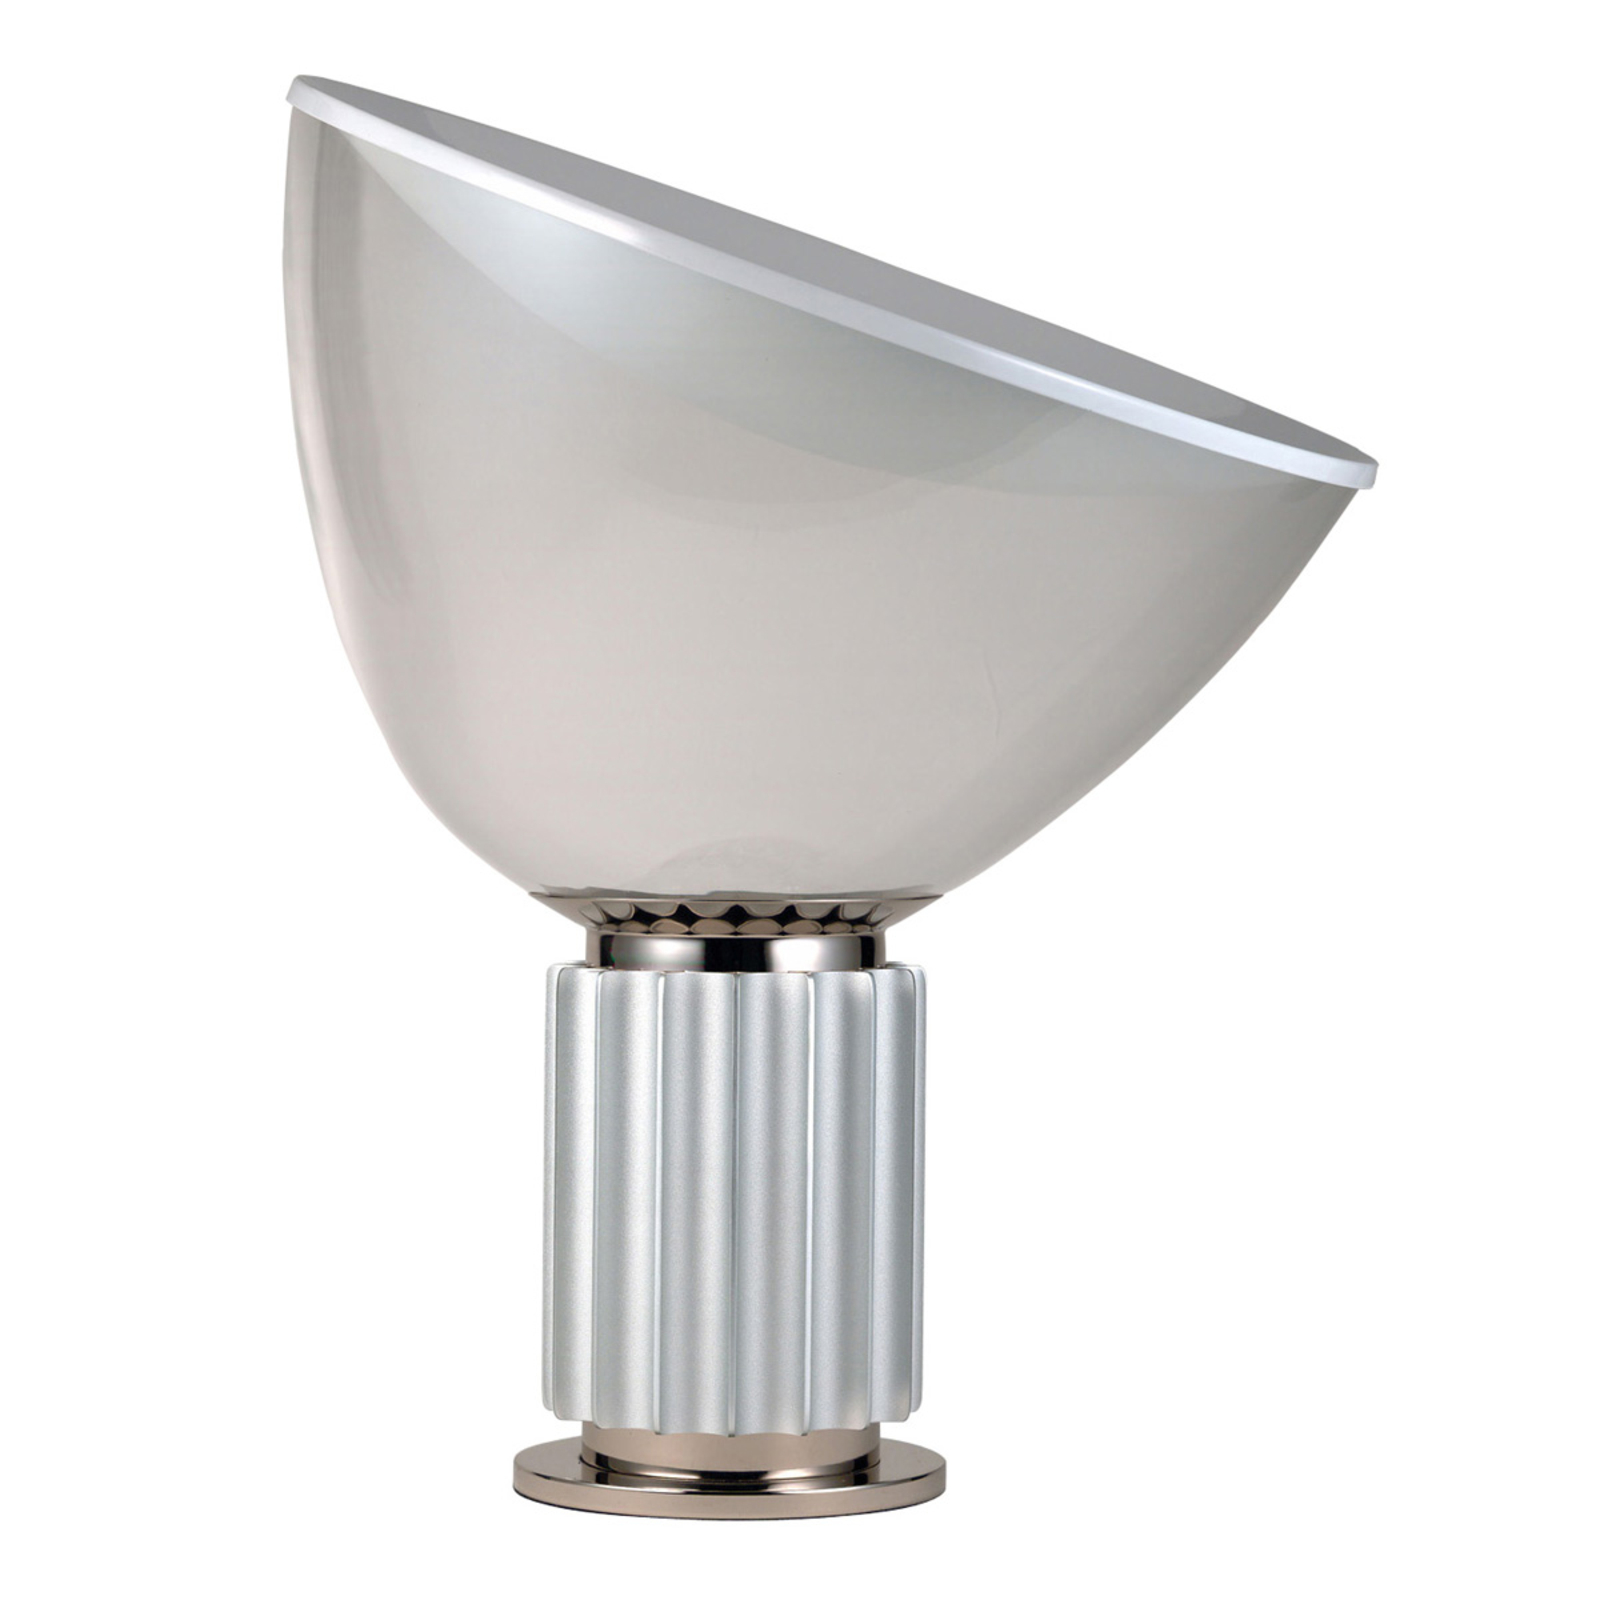 TACCIA Futuristic-looking LED Table Lamp_3510108_1